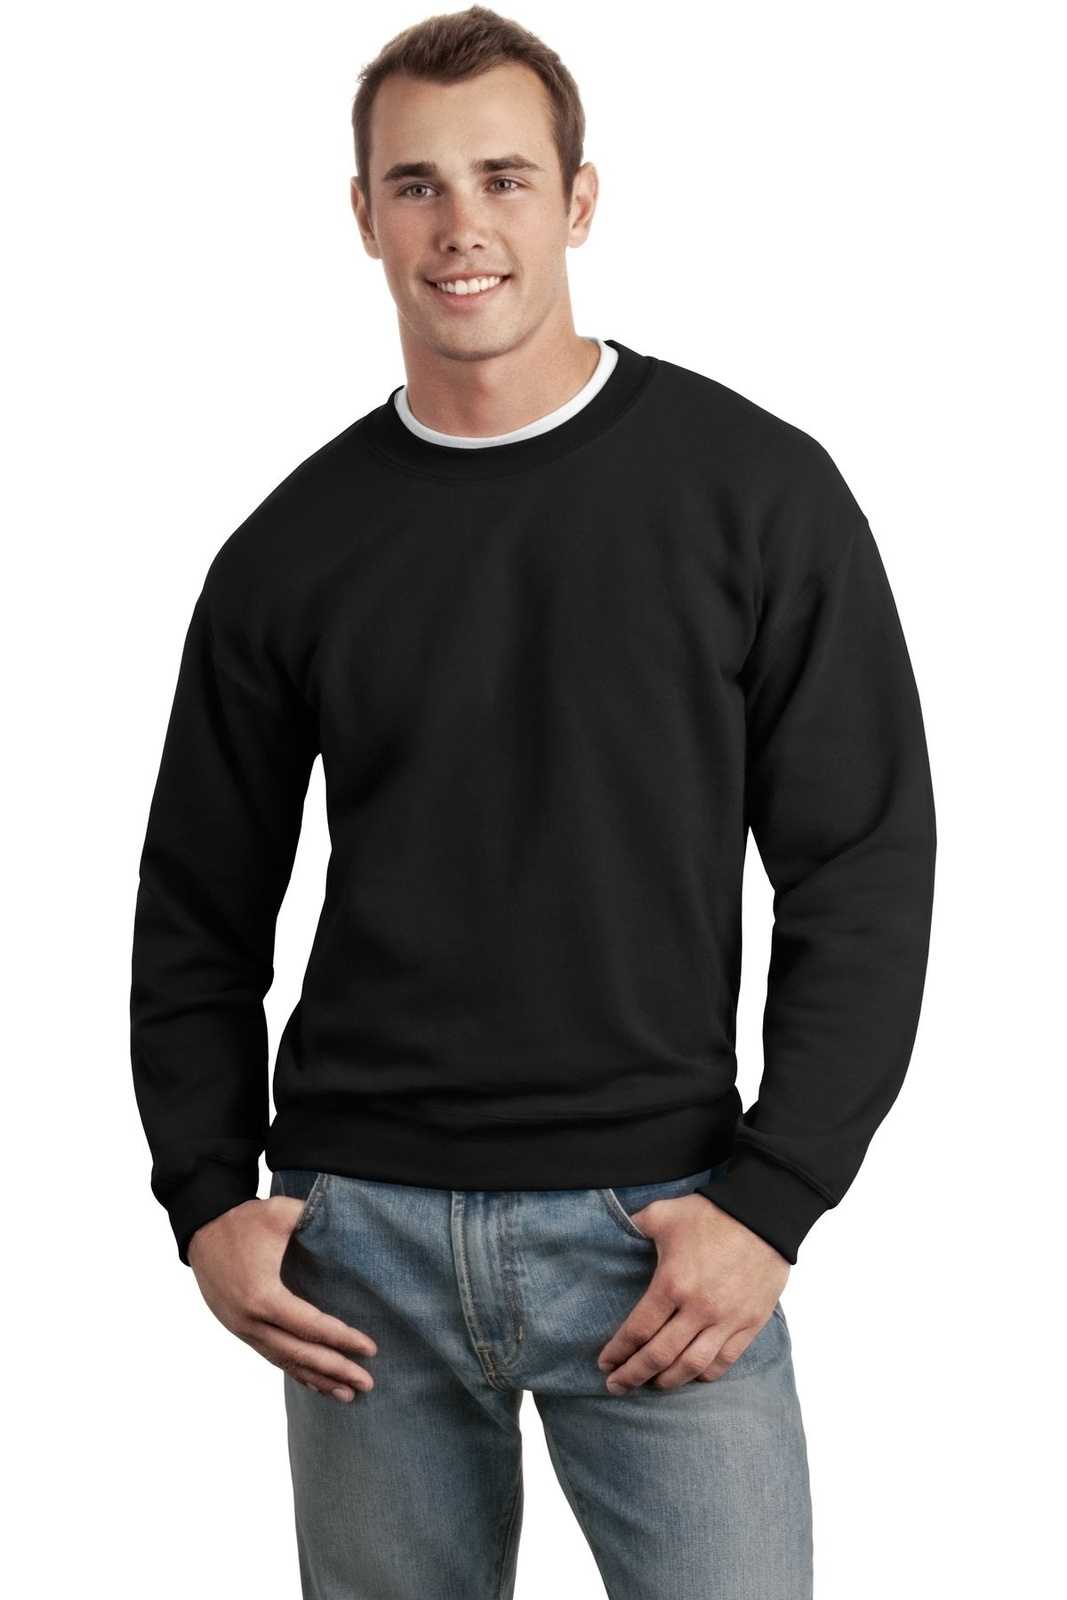 Gildan 12000 Dryblend Crewneck Sweatshirt - Black - HIT a Double